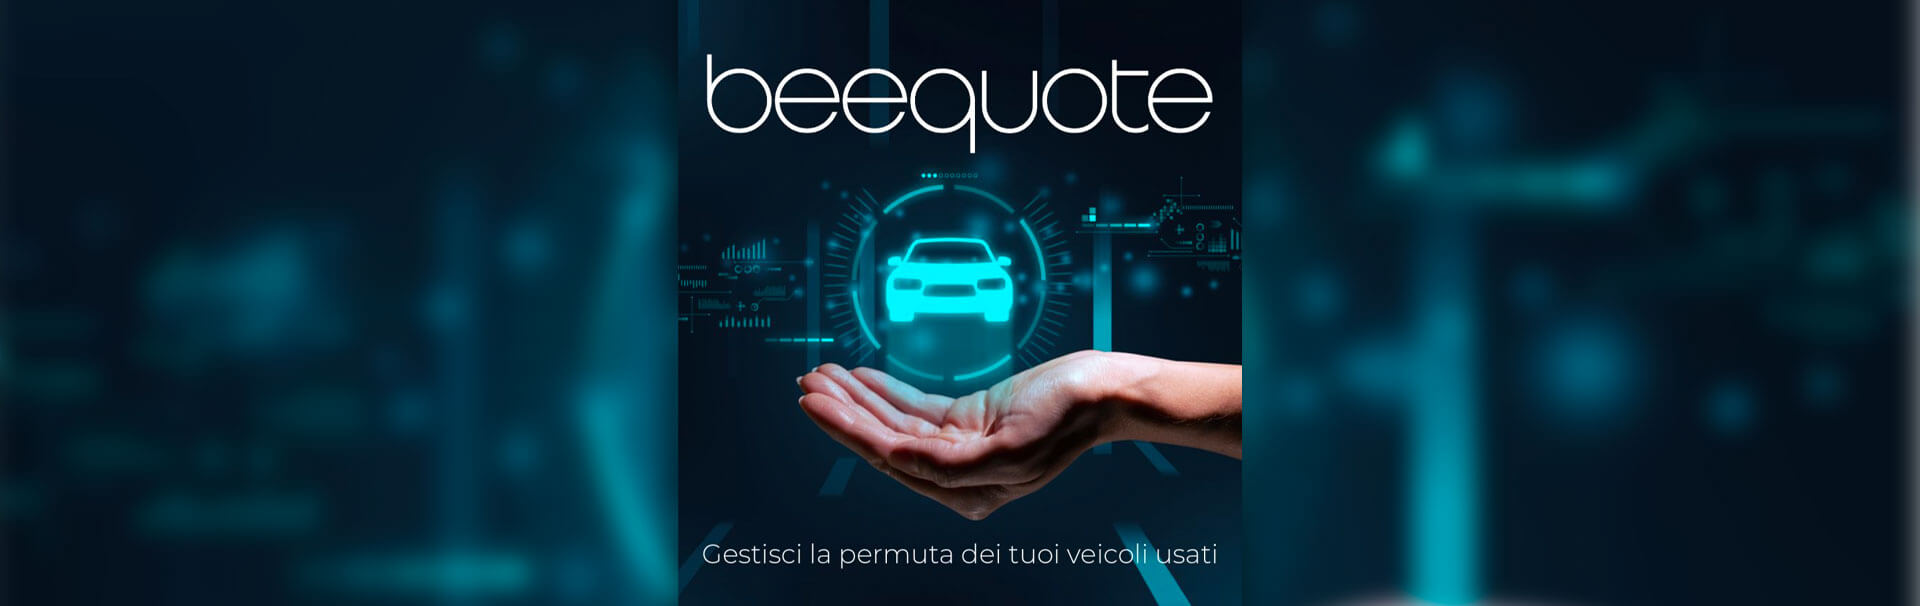 BeeQuote è la soluzione più semplice e veloce per gestire la permuta dei tuoi veicoli usati